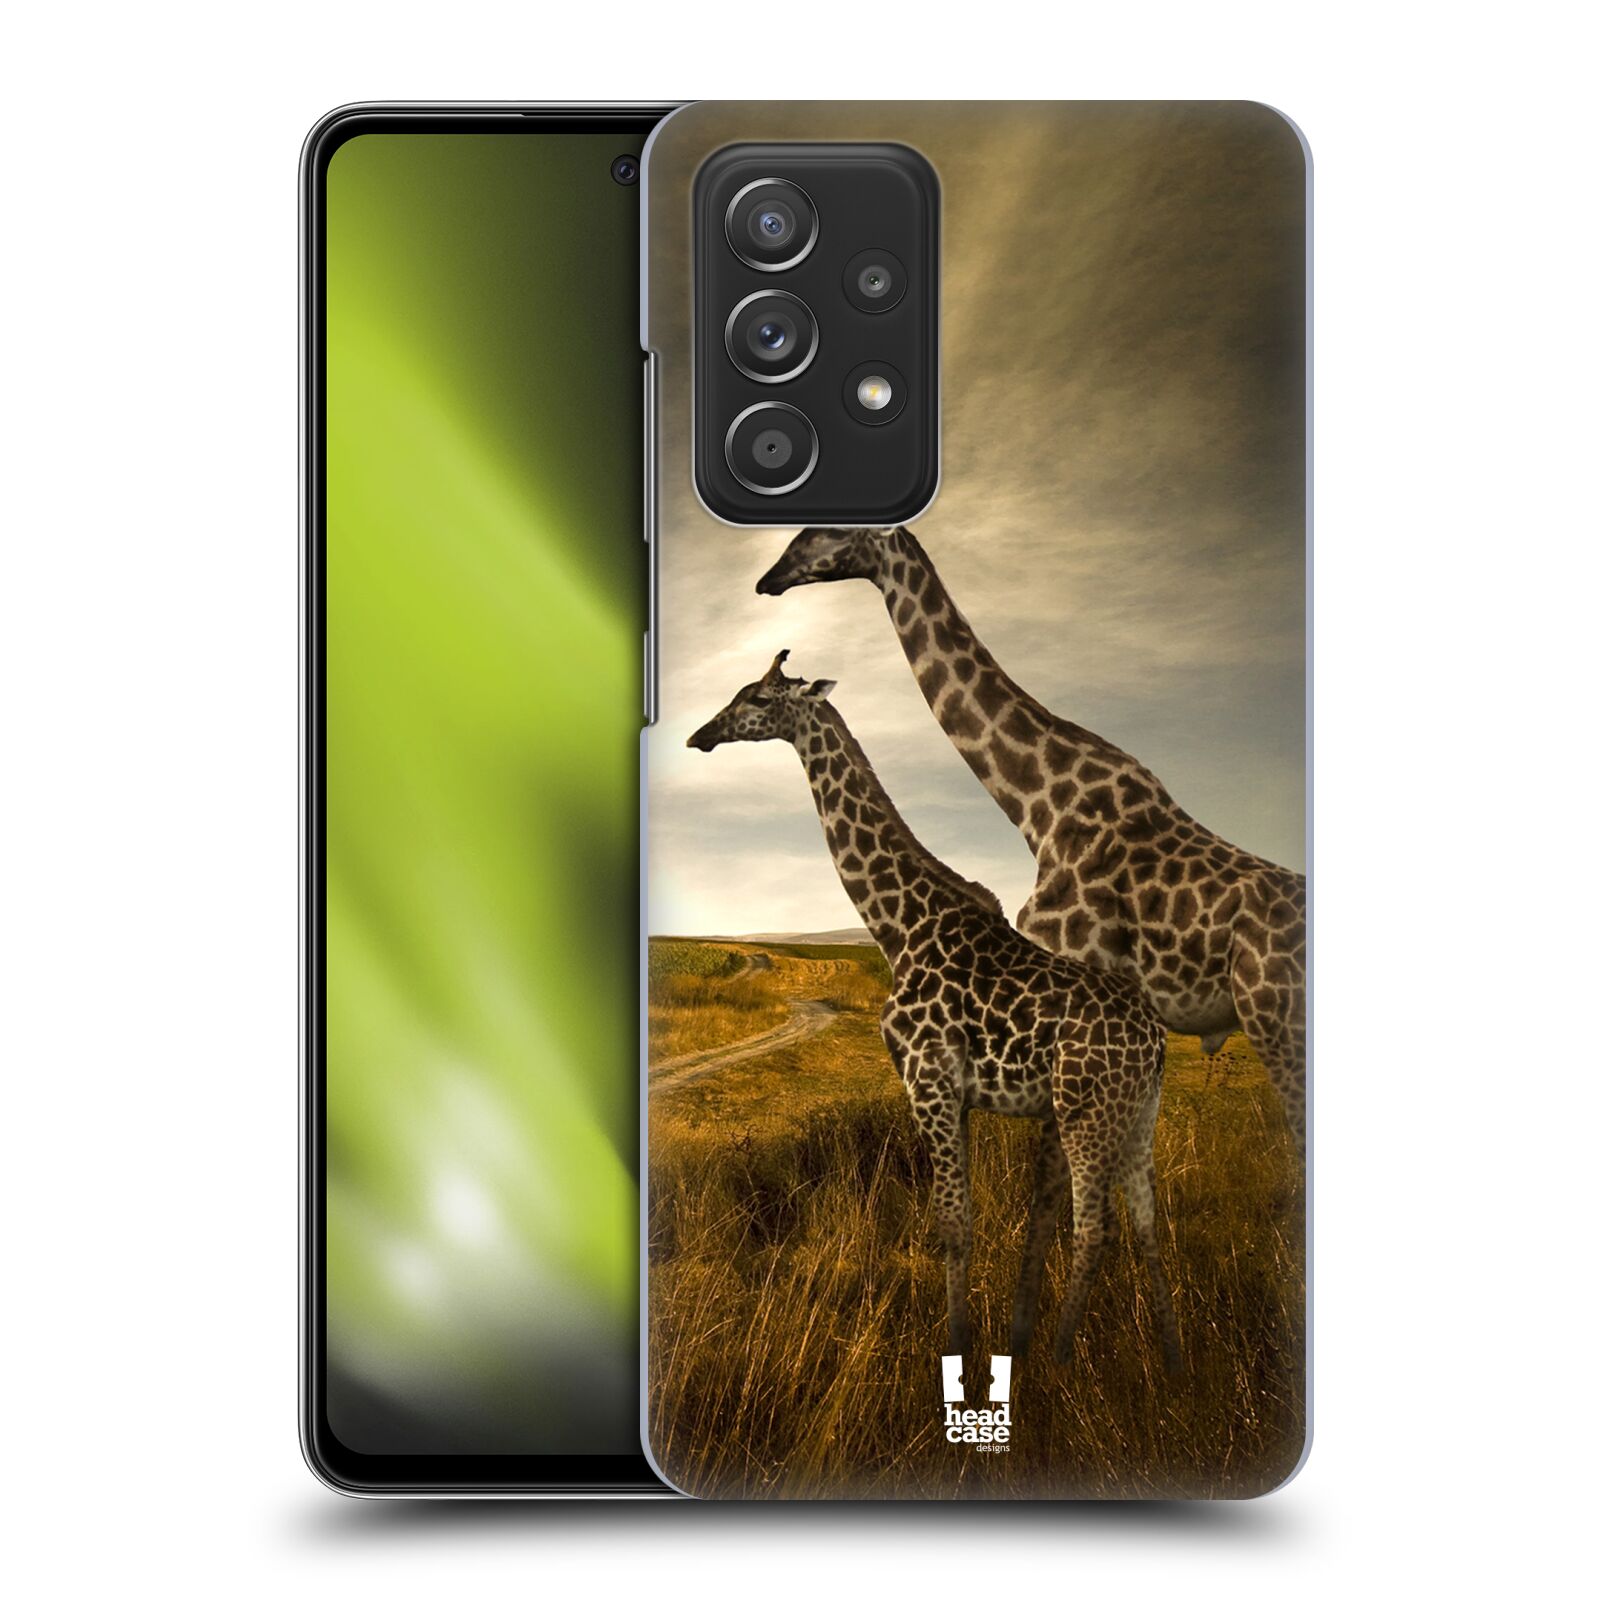 Zadní obal pro mobil Samsung Galaxy A52 / A52s / A52 5G - HEAD CASE - Svět zvířat žirafy